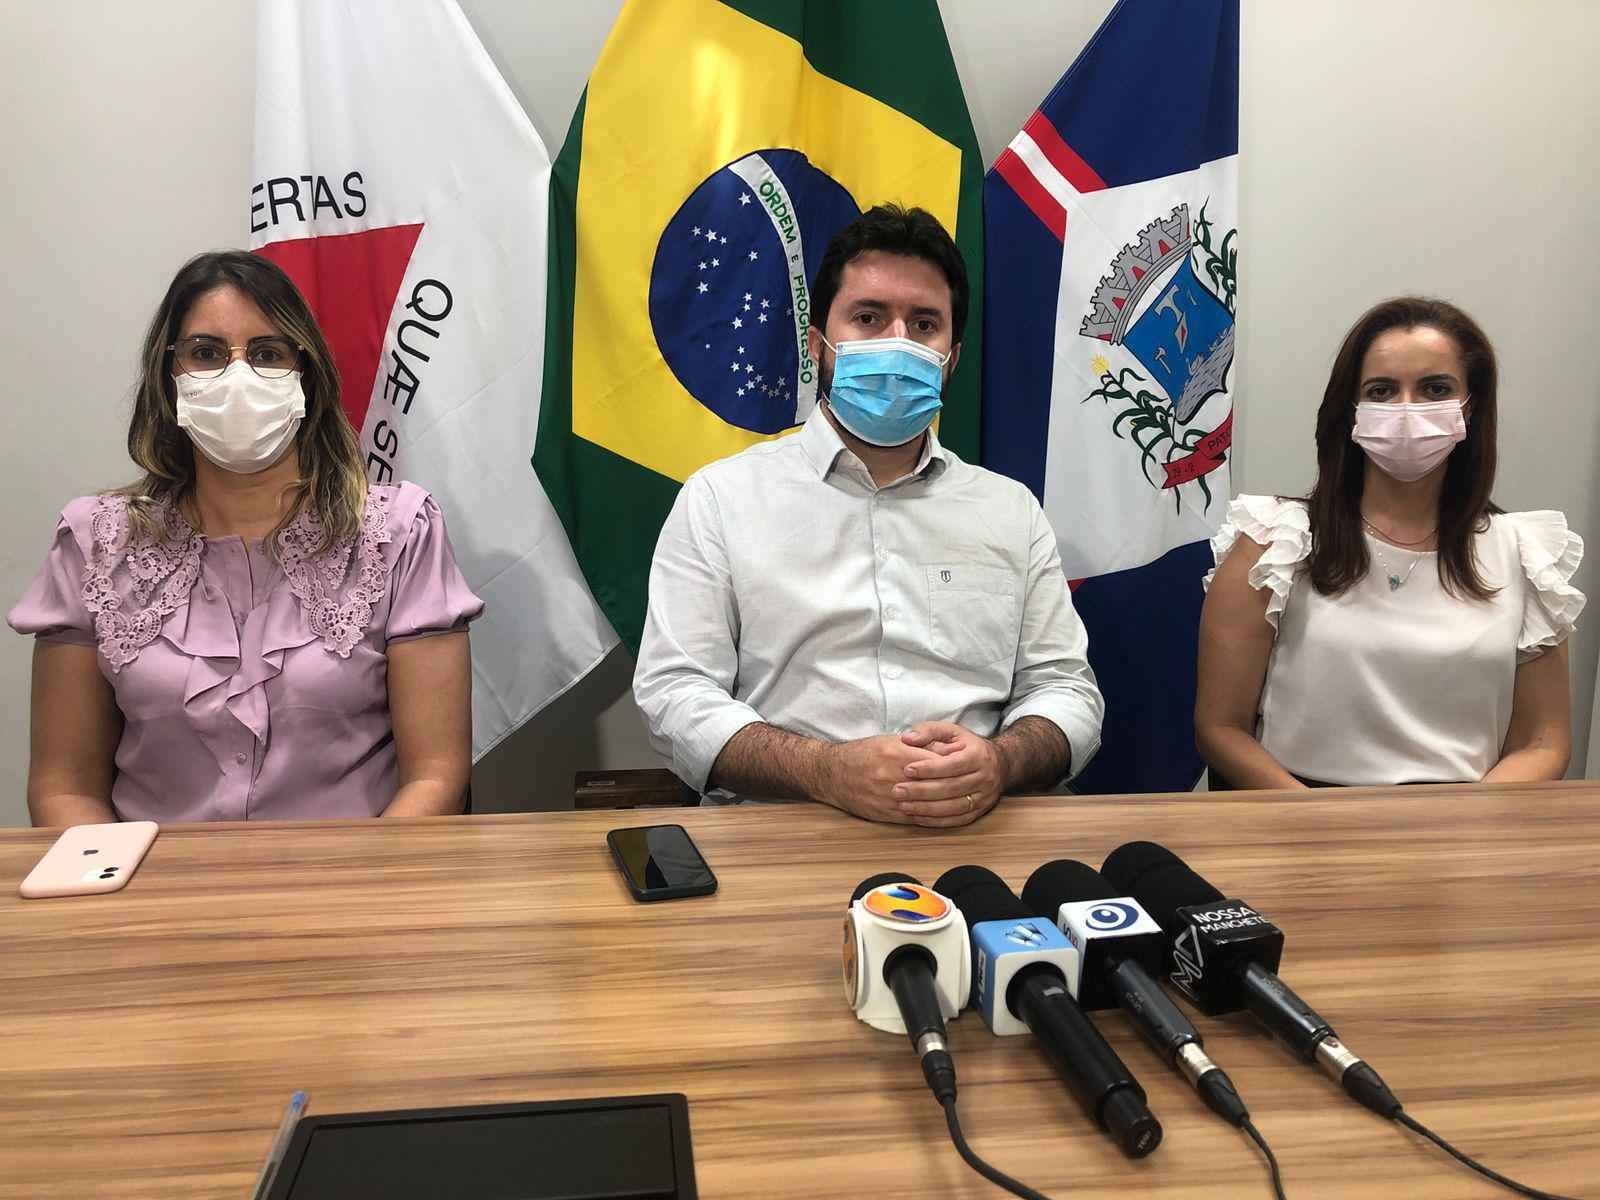 Patos de Minas transfere ortopedia e anuncia mutirão de cirurgias eletivas - Igor Nunes